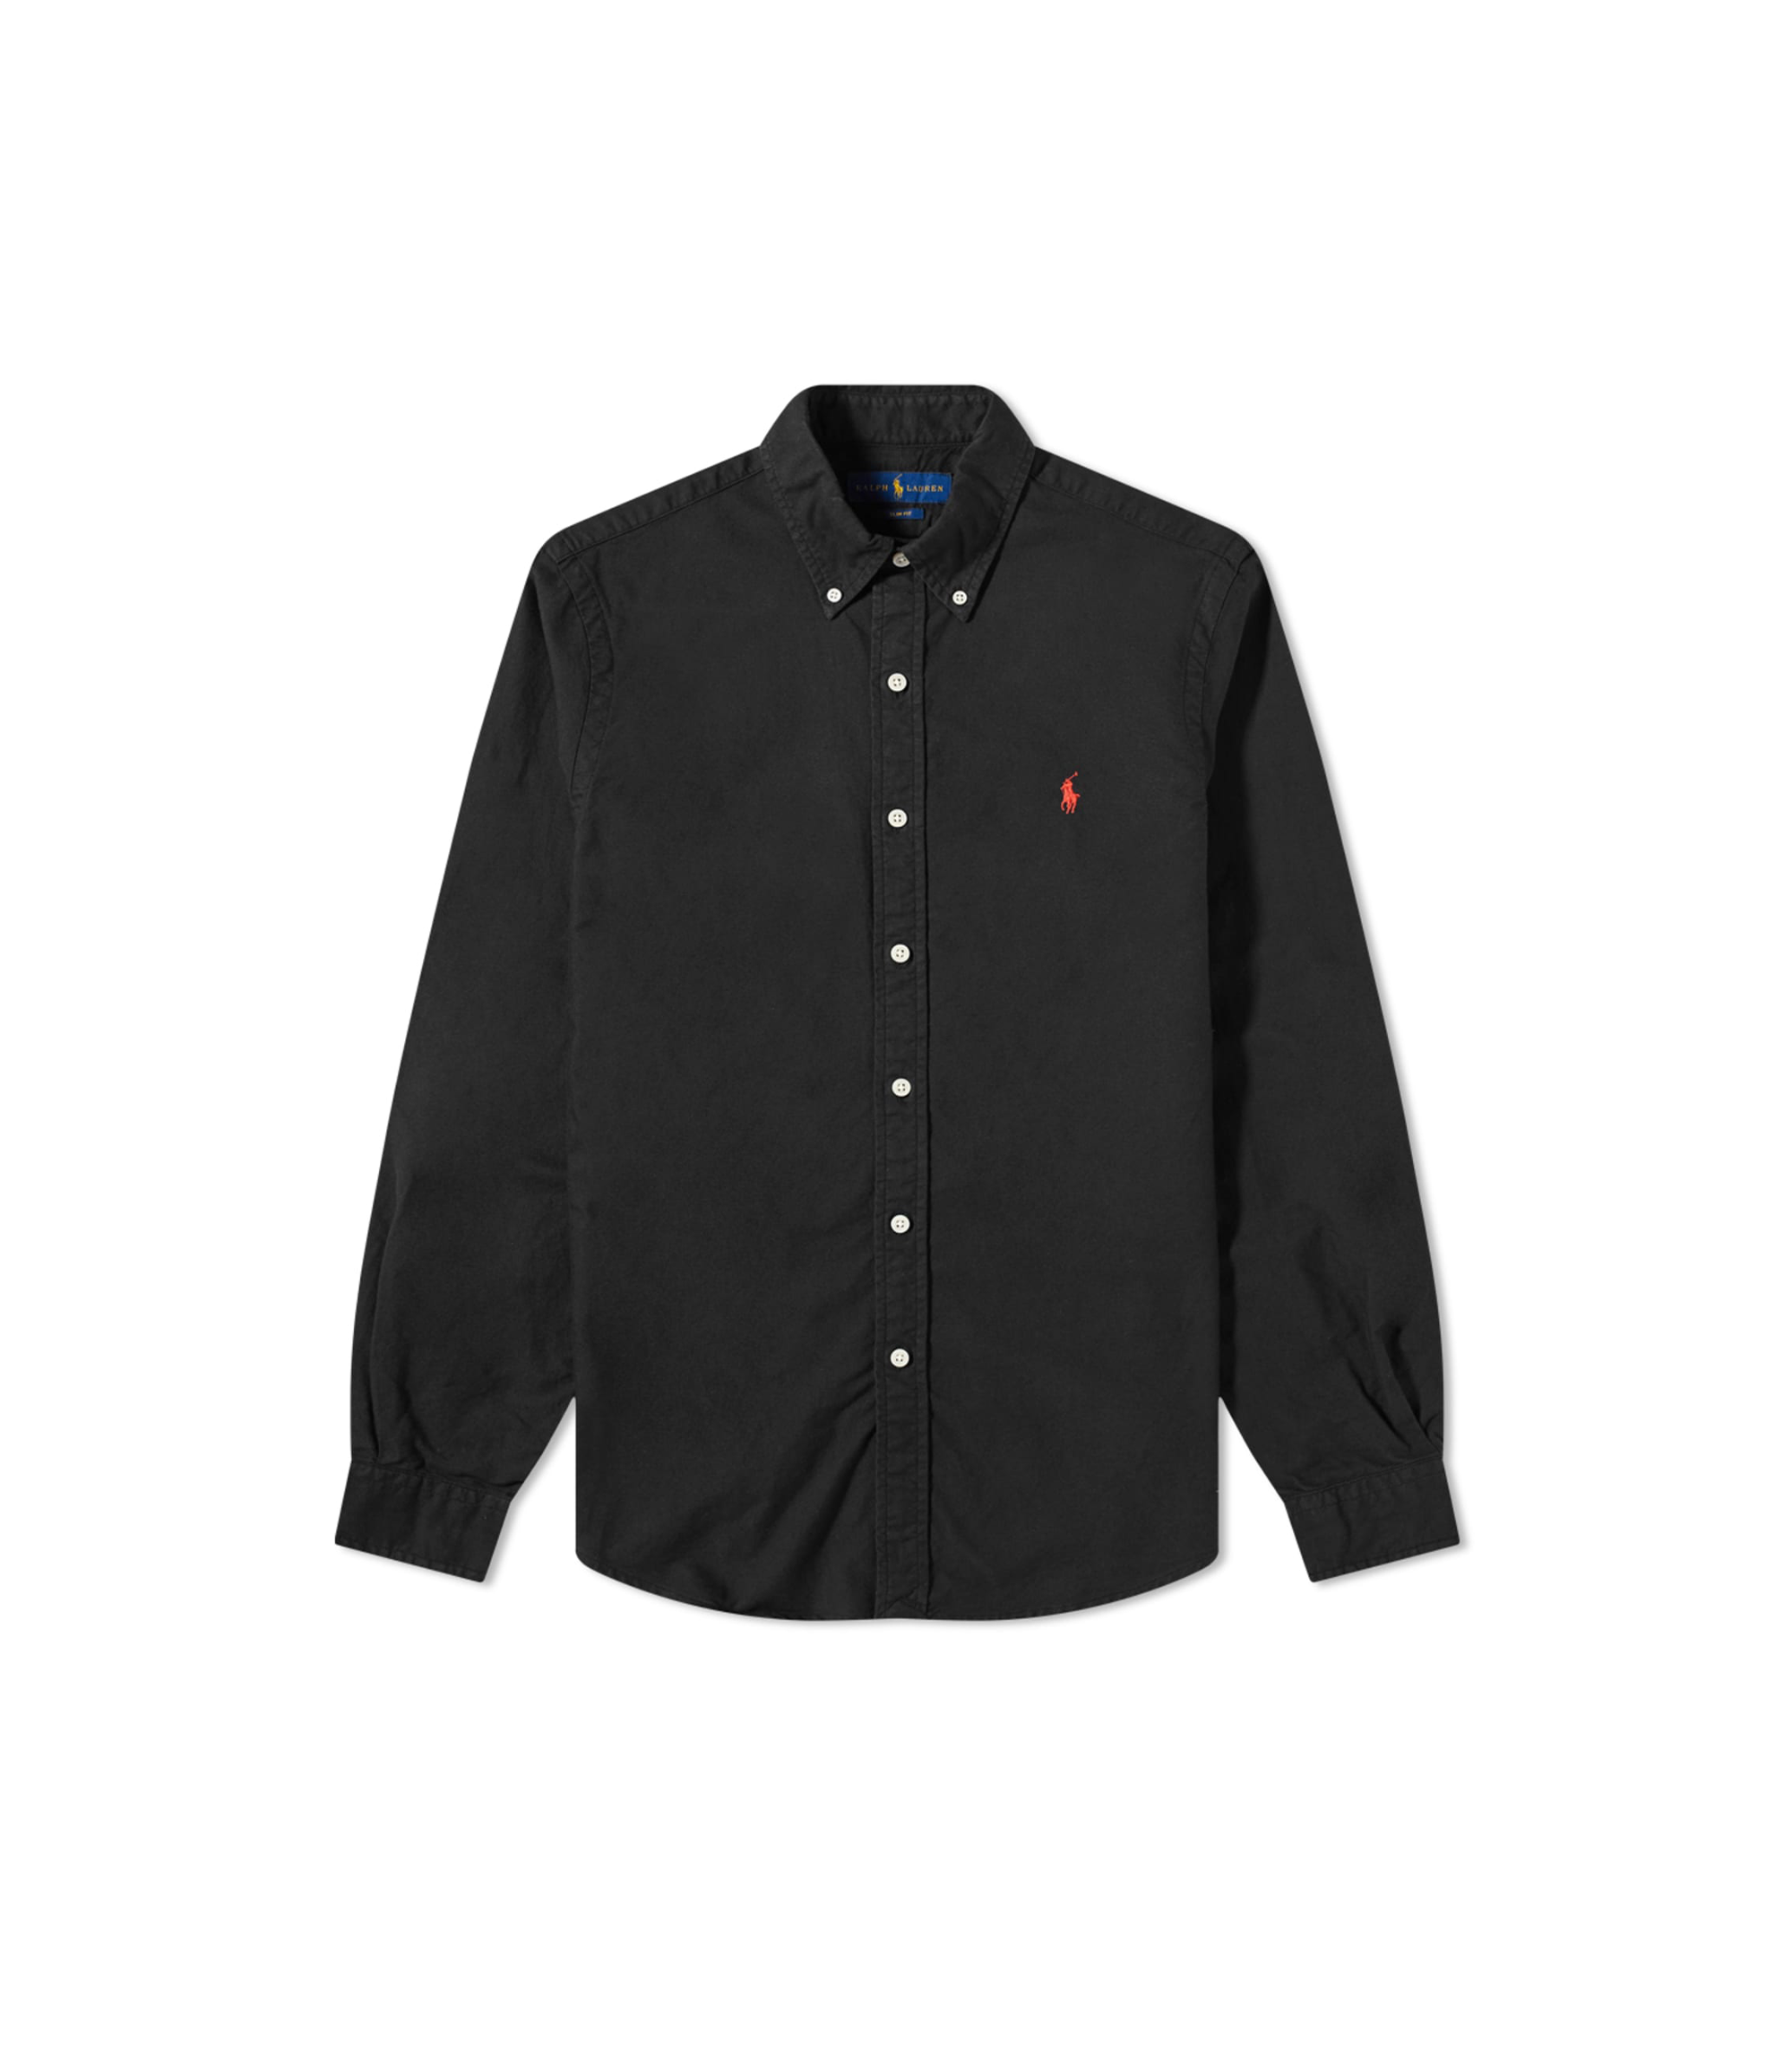 Woven Linen Button Up Shirt - Black